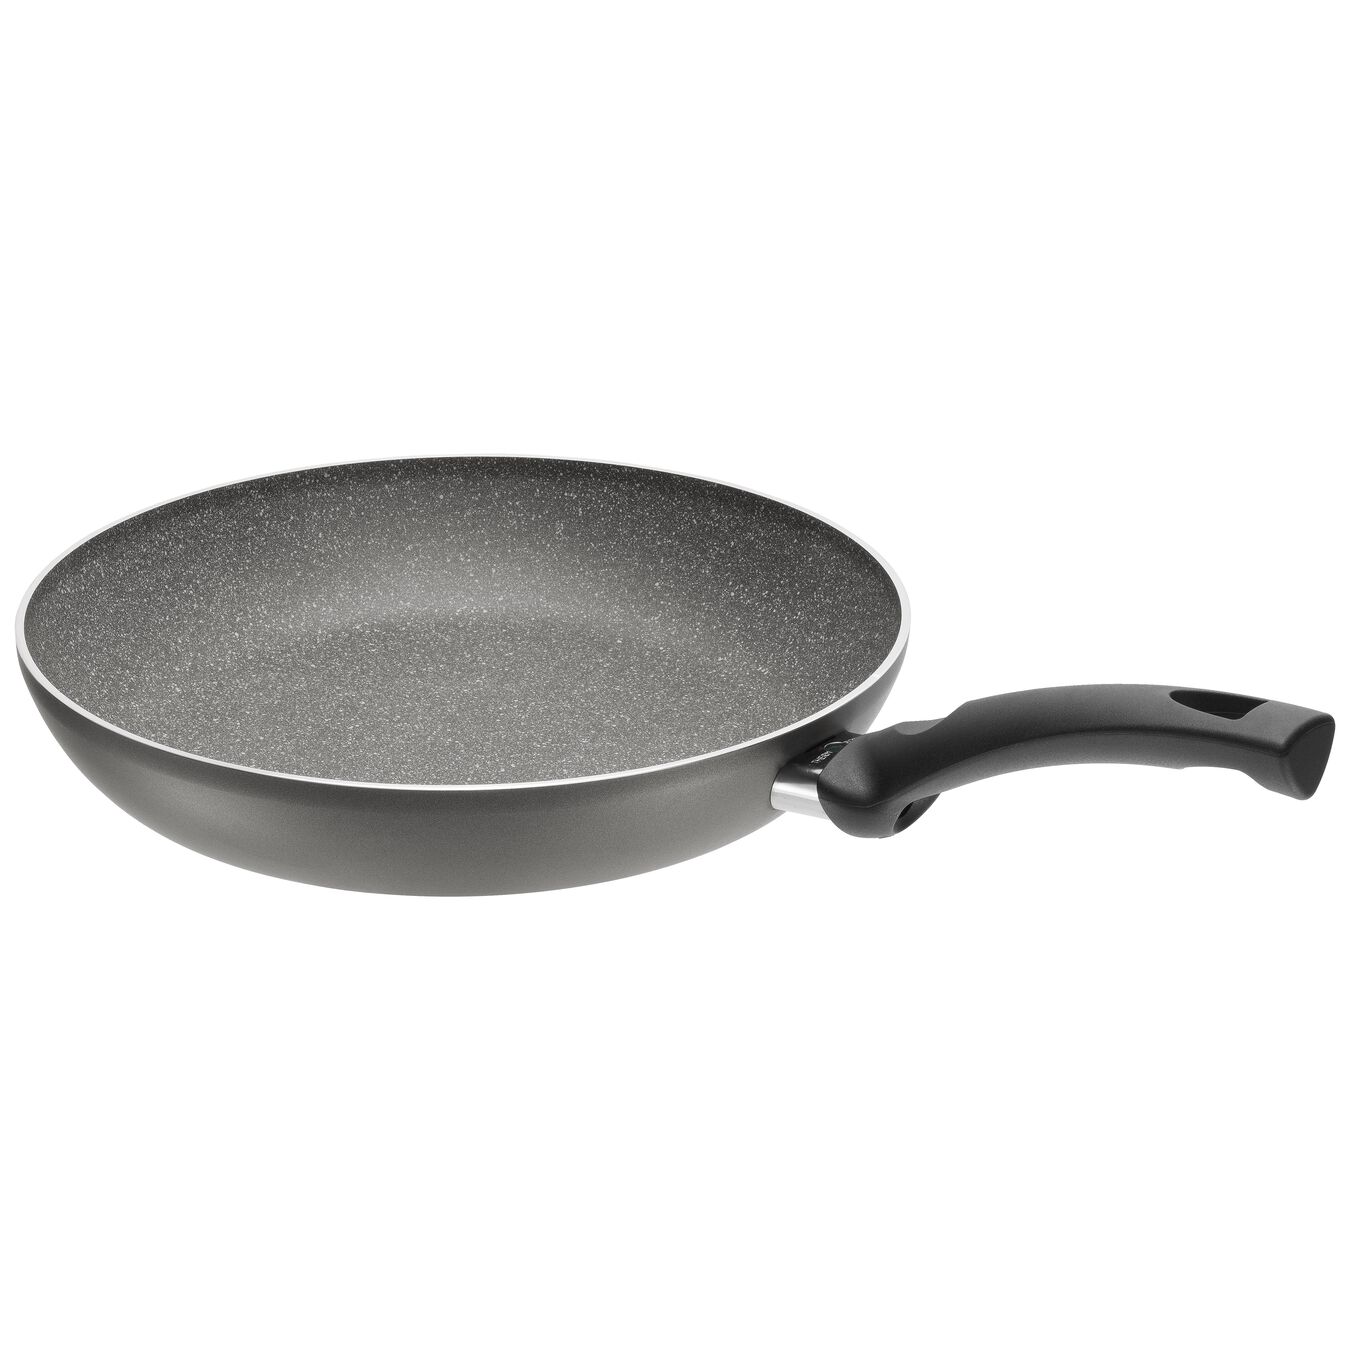 28 cm Aluminium Frying pan,,large 2